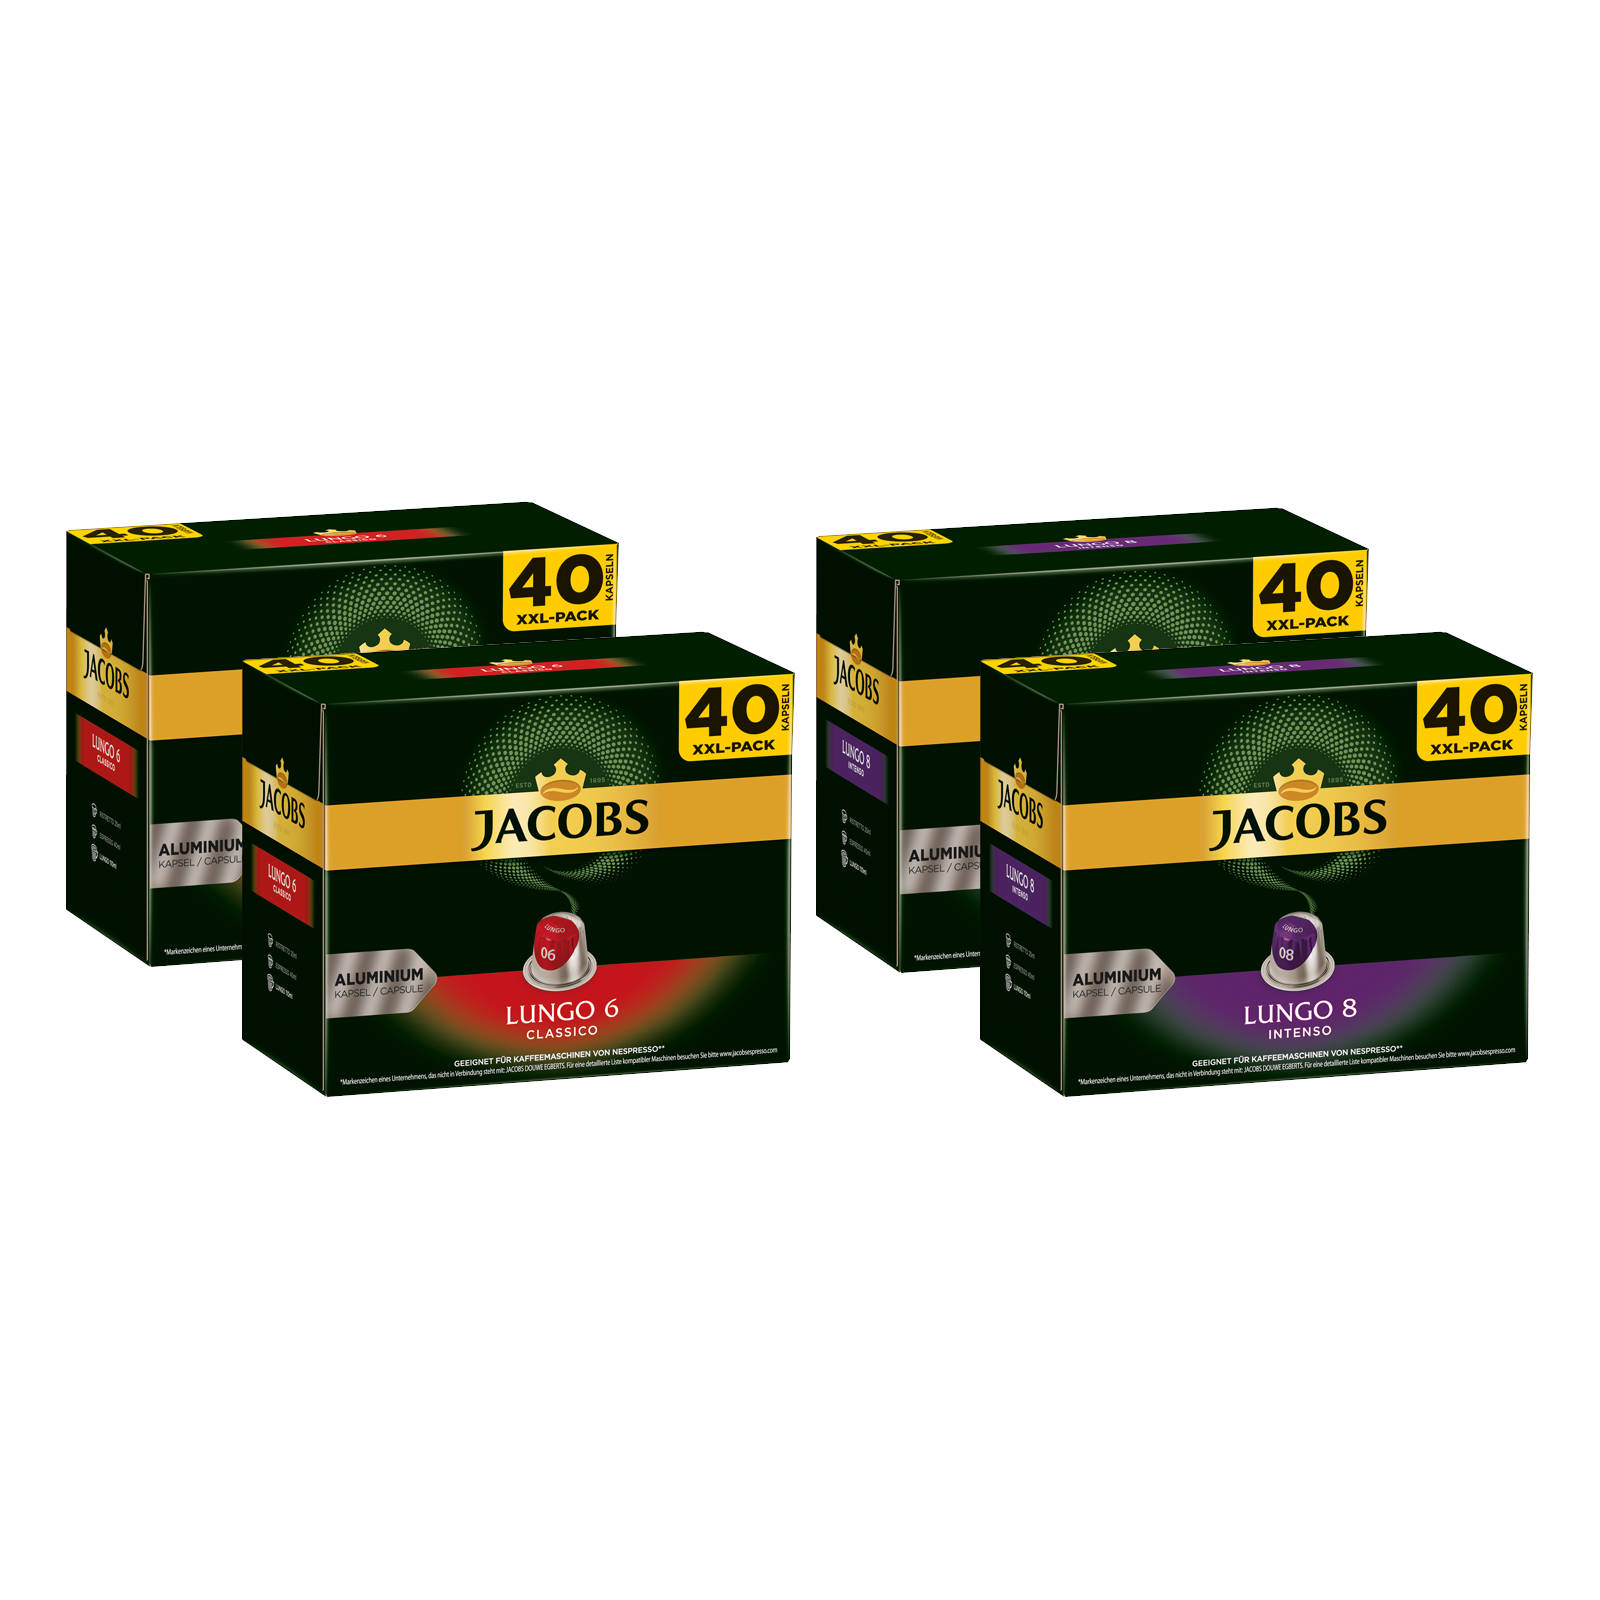 JACOBS Lungo 6 Classico + XXL-Packs kompatible Lungo Kaffeekapseln (Nespresso 160 8 Nespresso®* Intenso System)